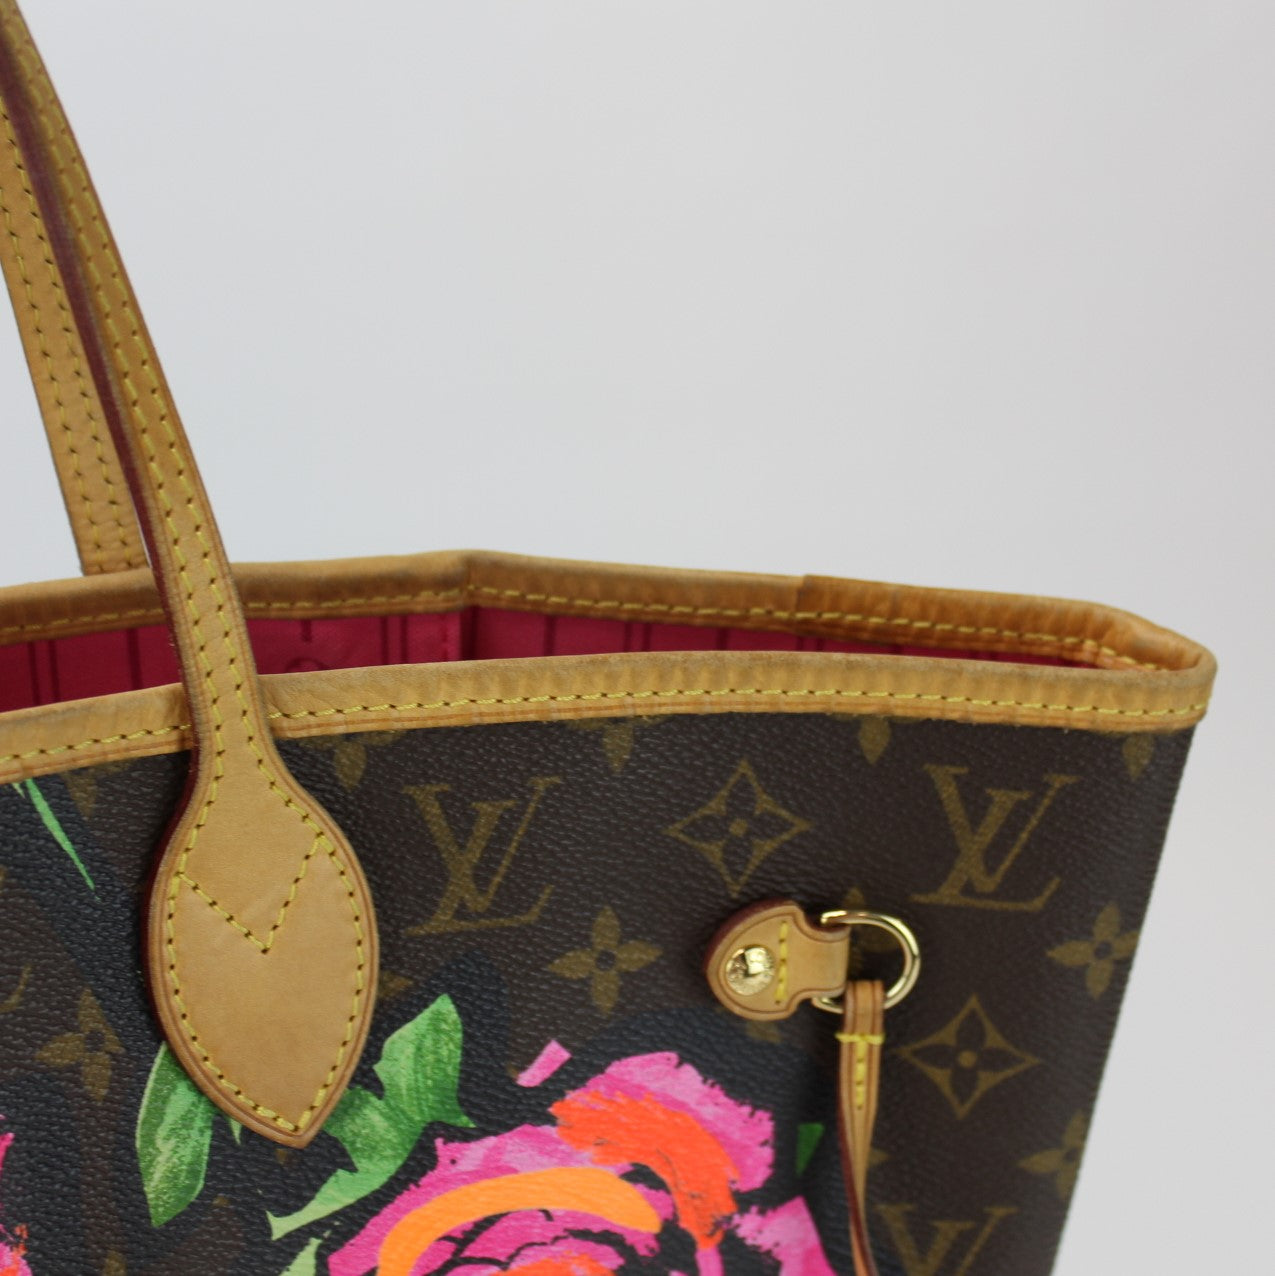 Neverfull MM Monogram Stephen Sprouse Roses (PL4) – Keeks Designer Handbags